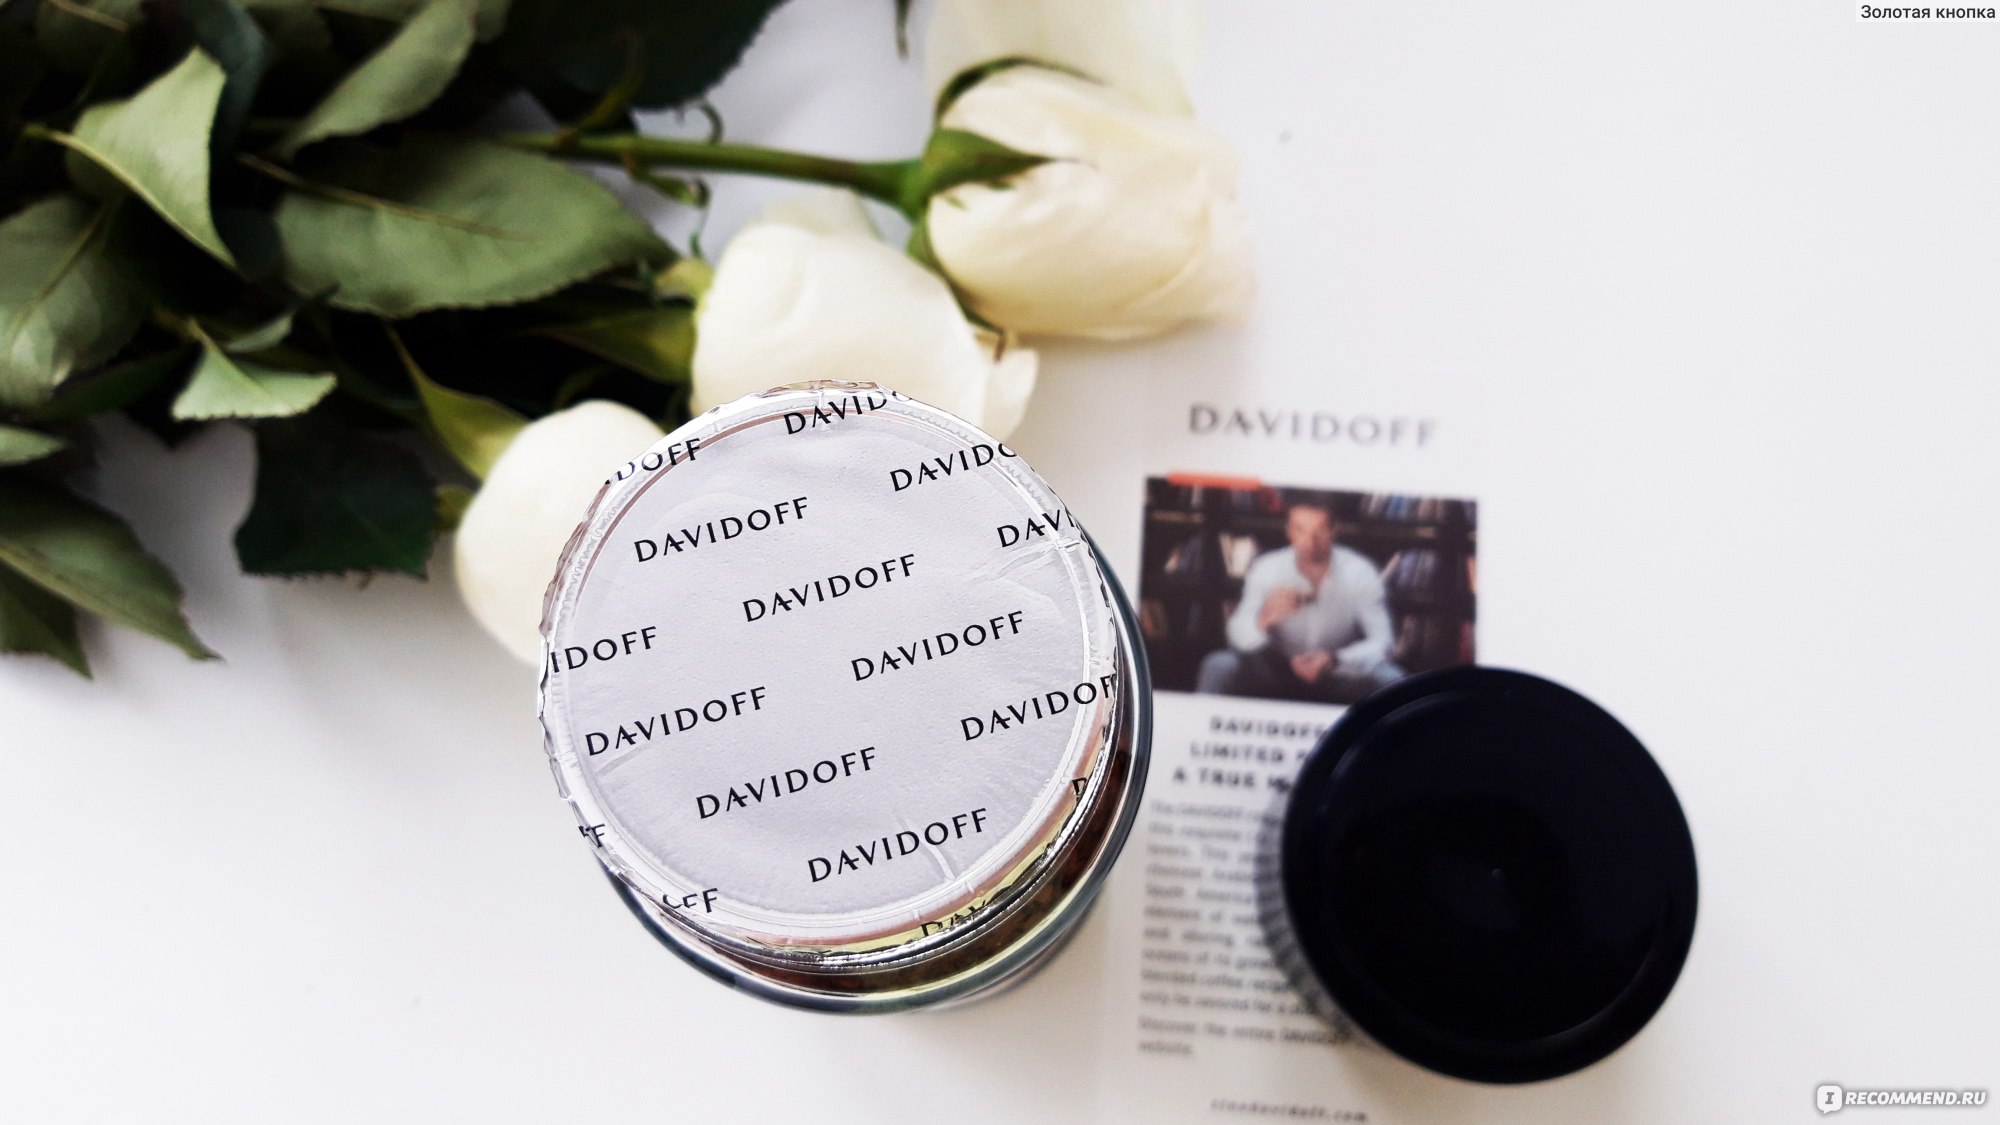 Кофе растворимый сублимированный "Davidoff"  Limited Edition Elements  фото